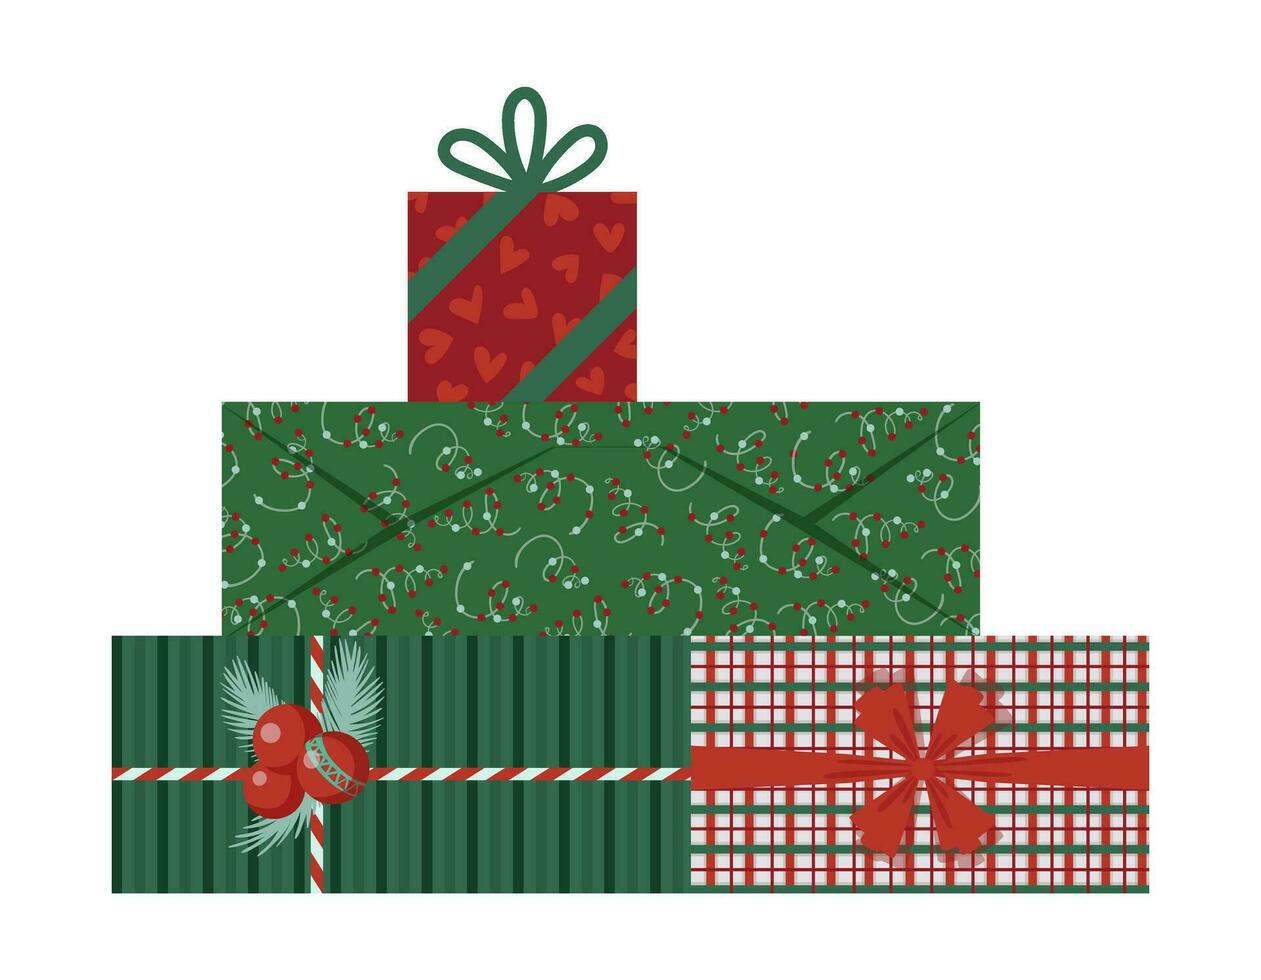 envuelto Navidad regalo cajas nuevo año presente cajas con cintas, arcos, verde y rojo envase documentos. para saludo tarjetas, pancartas, web ilustraciones, iconos, o logotipos vector ilustración eps 10